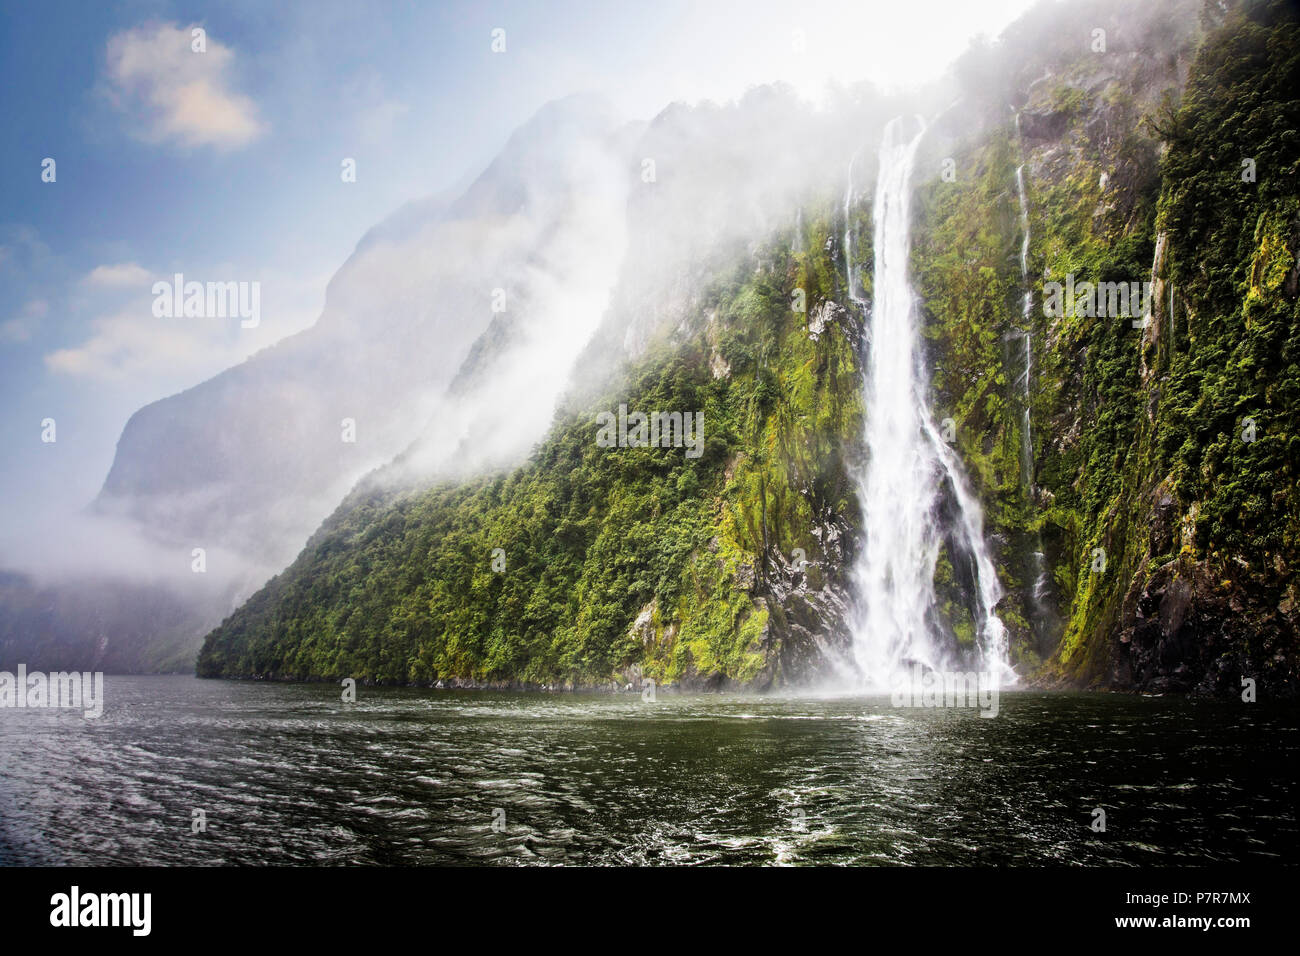 L'eau de pluie vers le bas des cascades des montagnes. Milford Sound à Fiordland, île du Sud, Nouvelle-Zélande. Banque D'Images